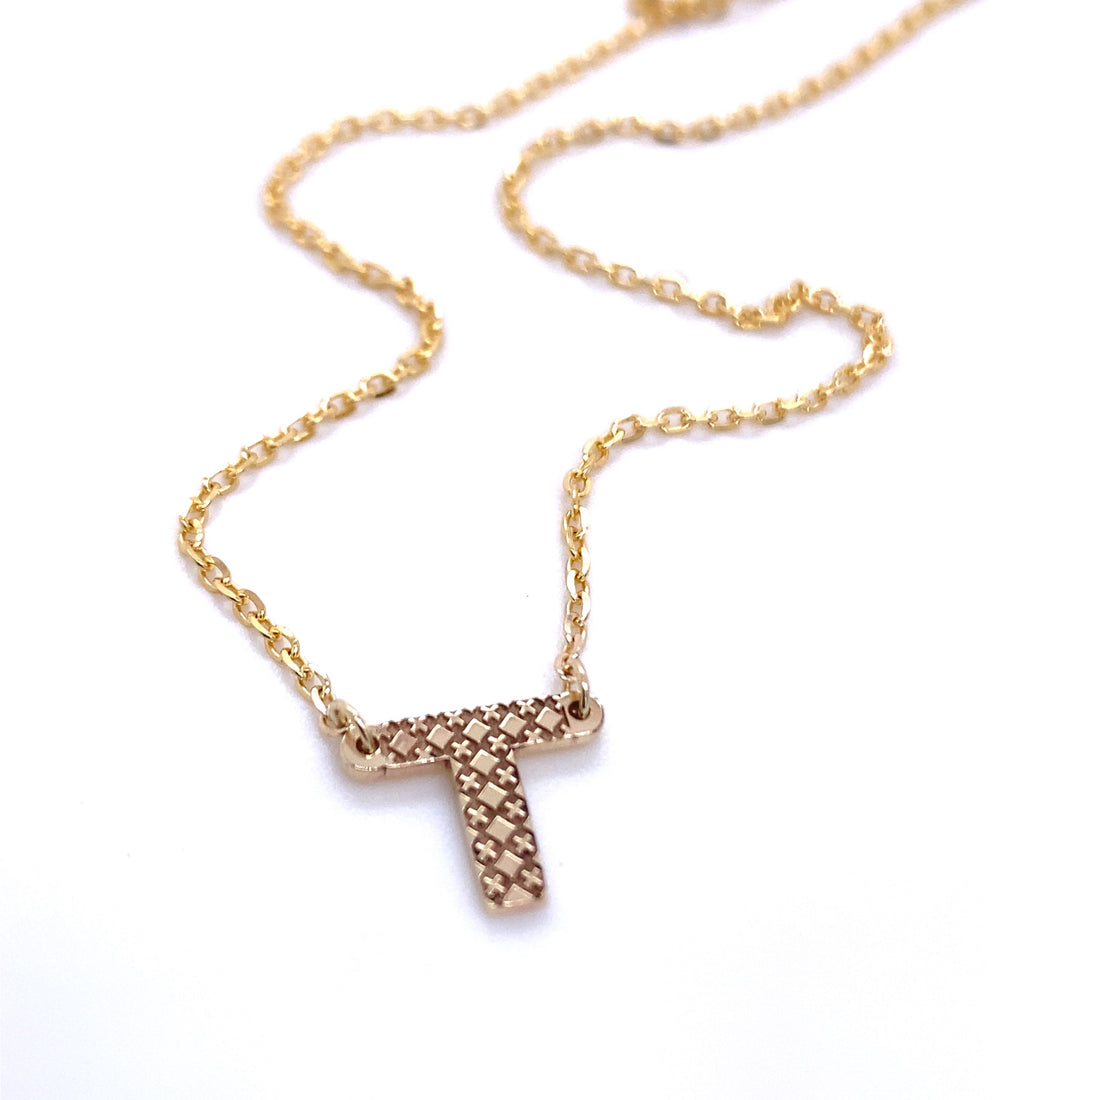 Petite Motif Necklace - 9ct Gold